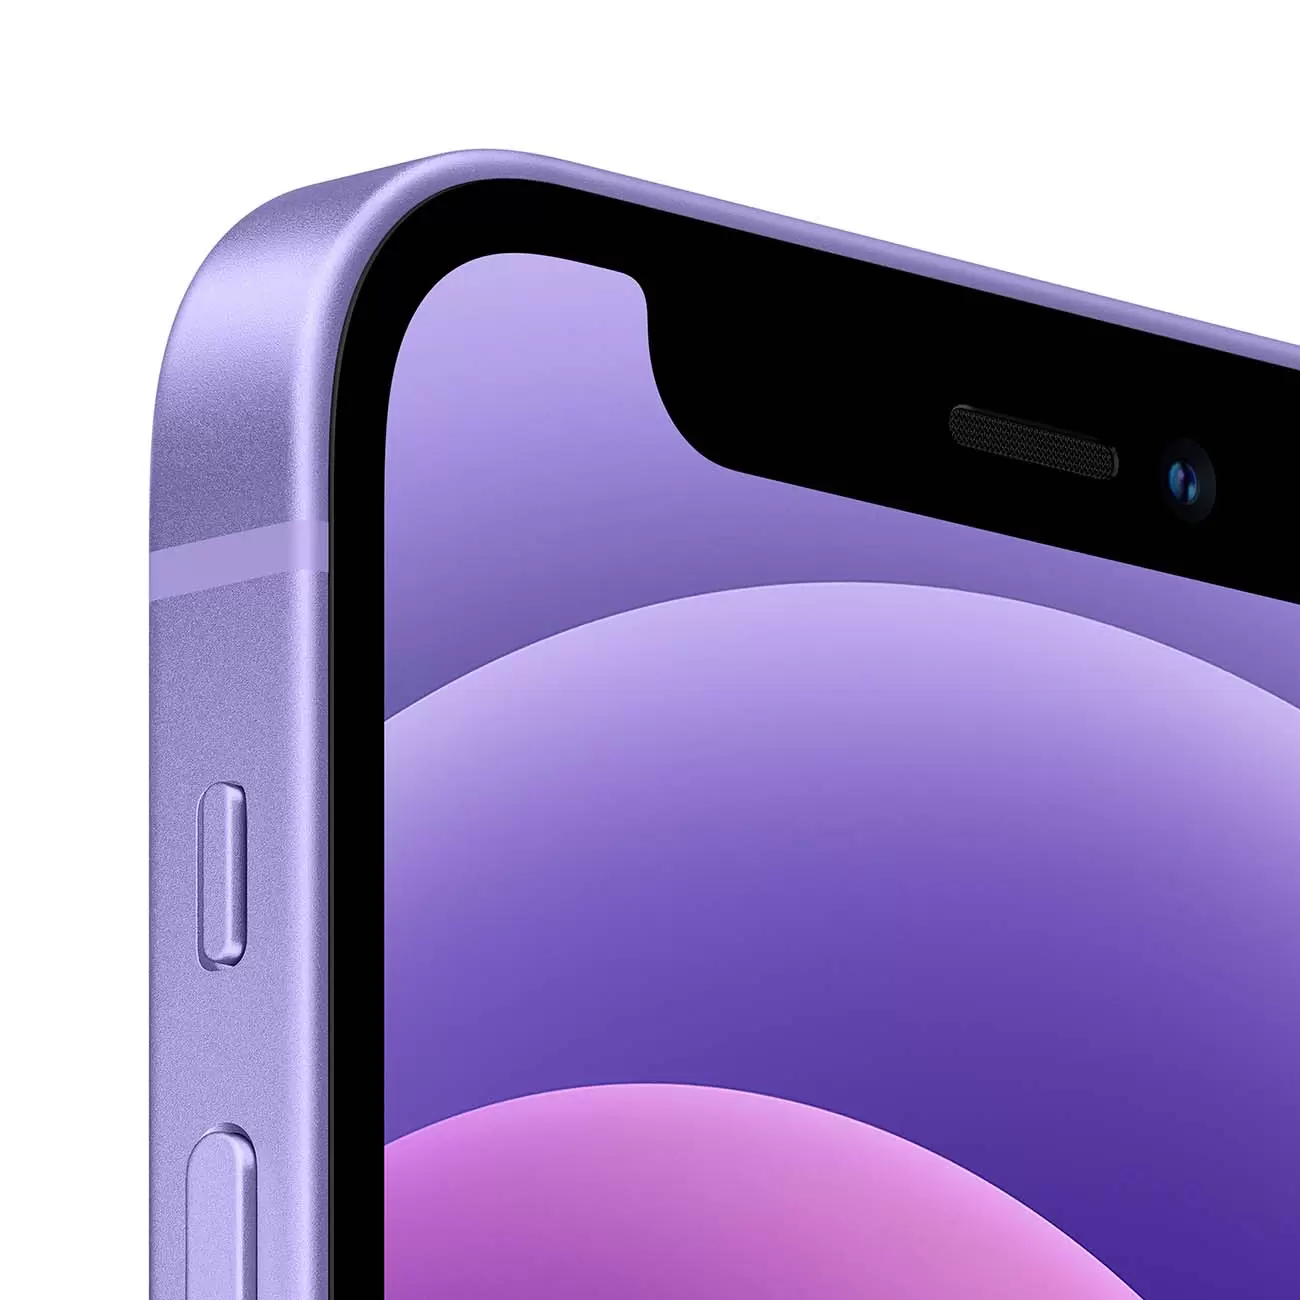 Купить смартфон apple iphone 12 64gb purple Apple iPhone 12 в официальном магазине Apple, Samsung, Xiaomi. iPixel.ru Купить, заказ, кредит, рассрочка, отзывы,  характеристики, цена,  фотографии, в подарок.